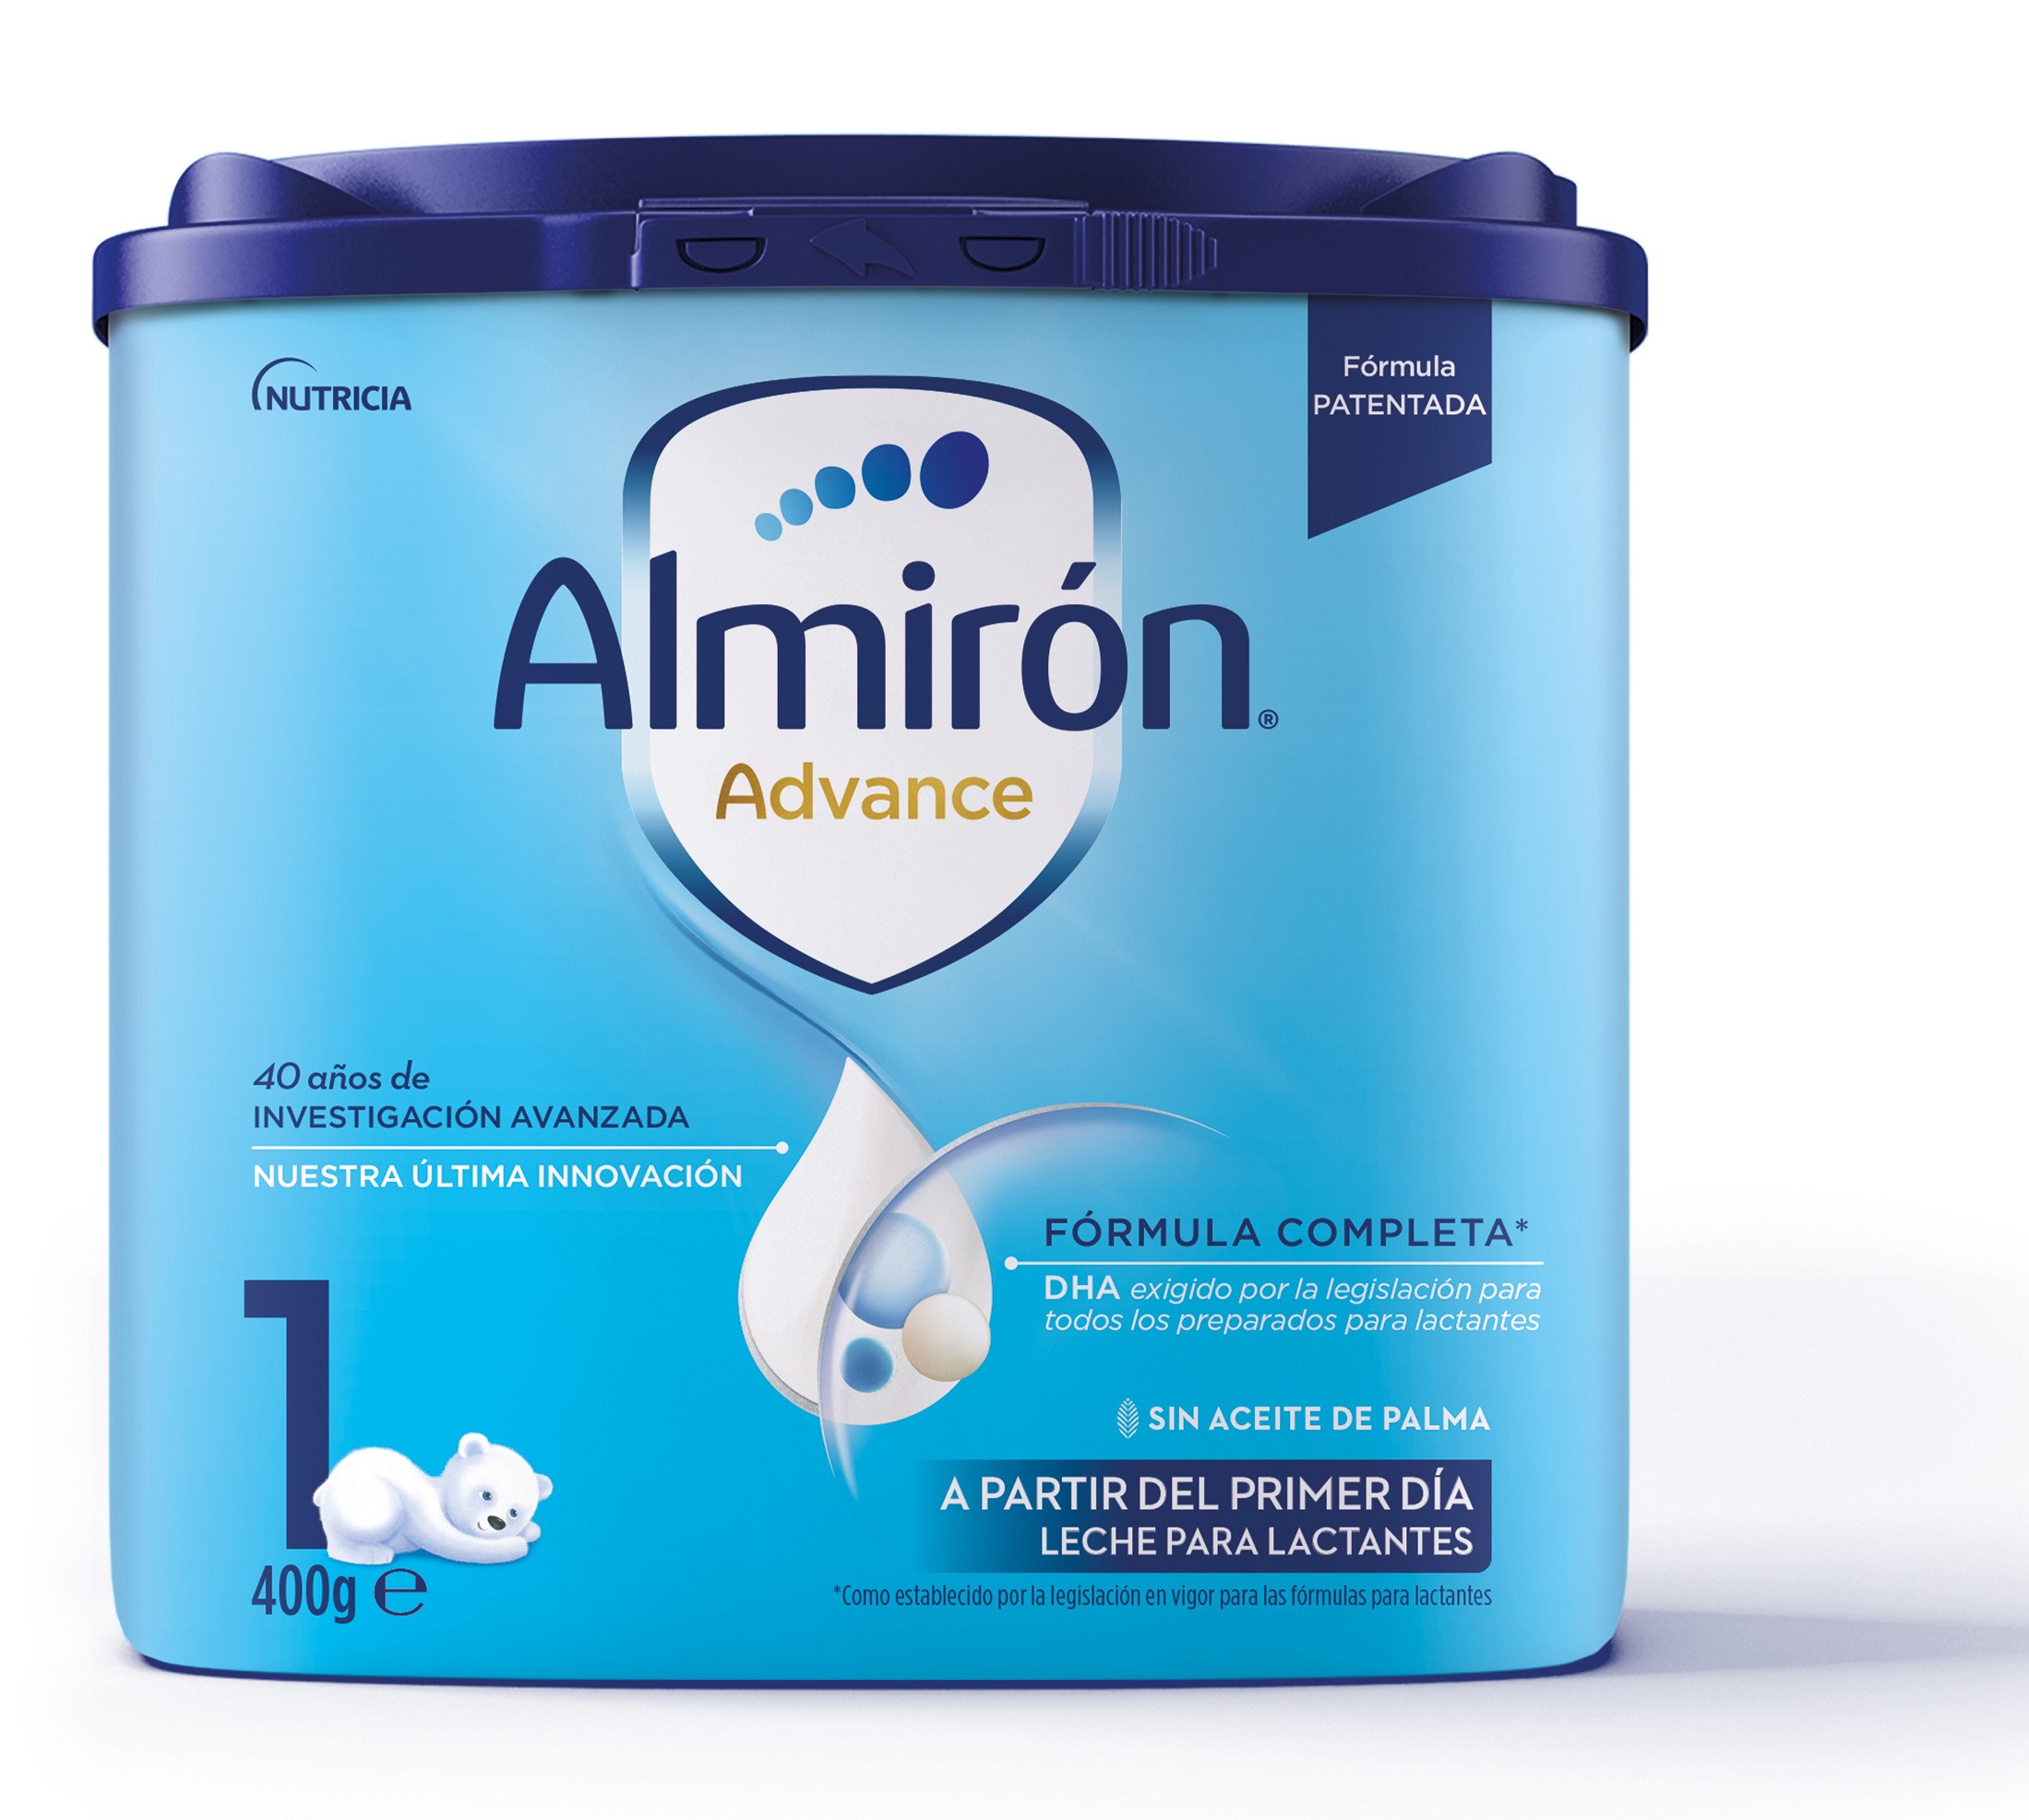 Almiron Advance+ Pronutra 2 Polvo 1200 G - Comprar ahora.